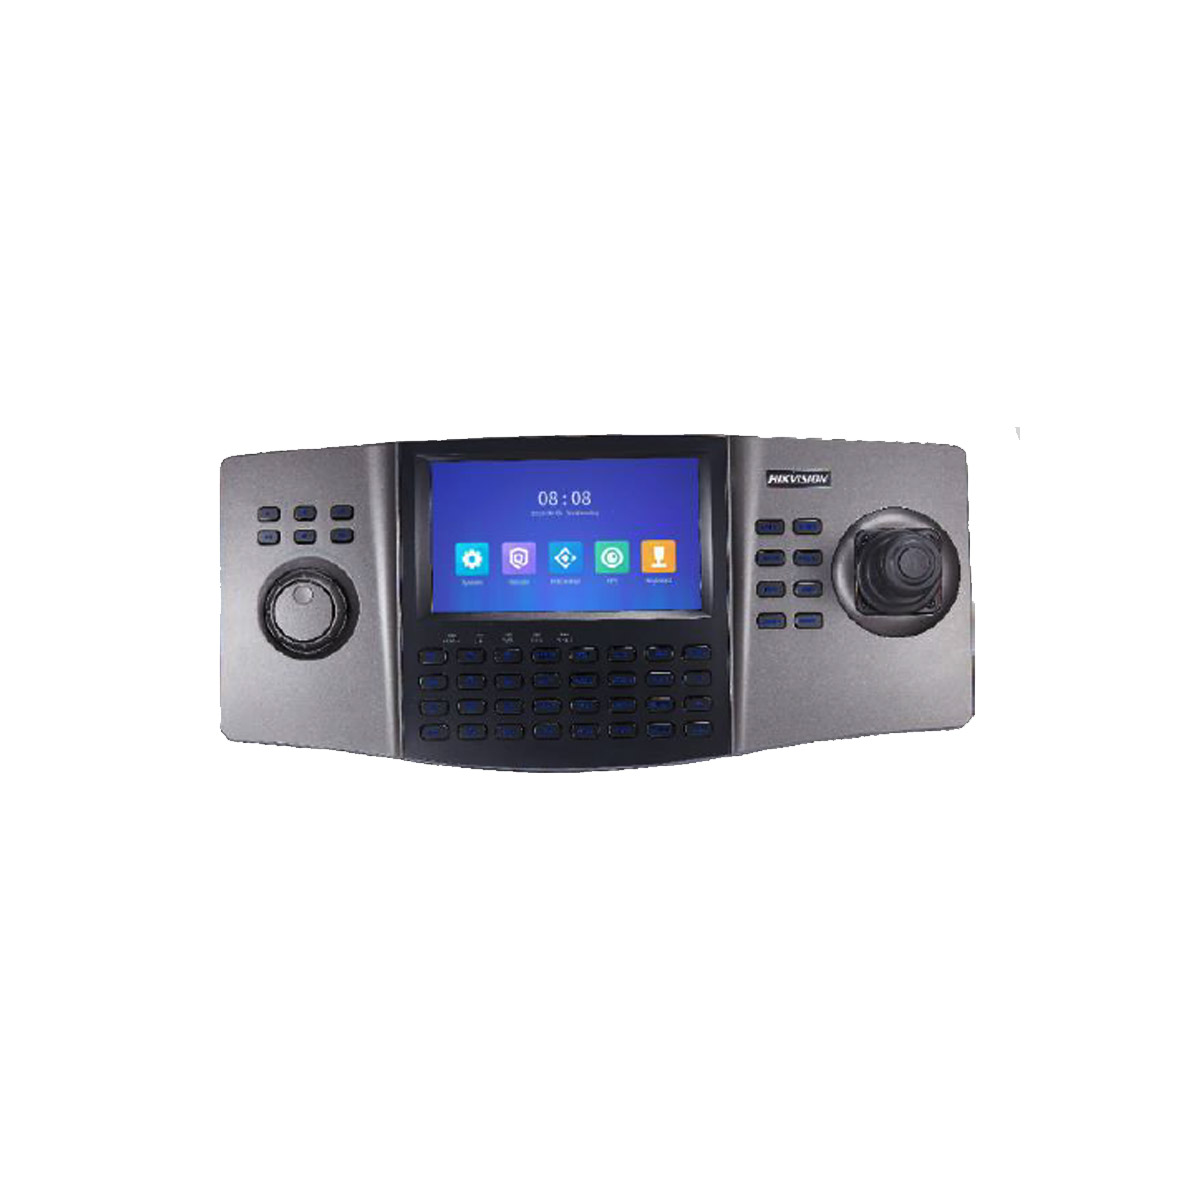 Controlador Joystick Hikvision DS-1100KI con Teclado y Pantalla Táctil